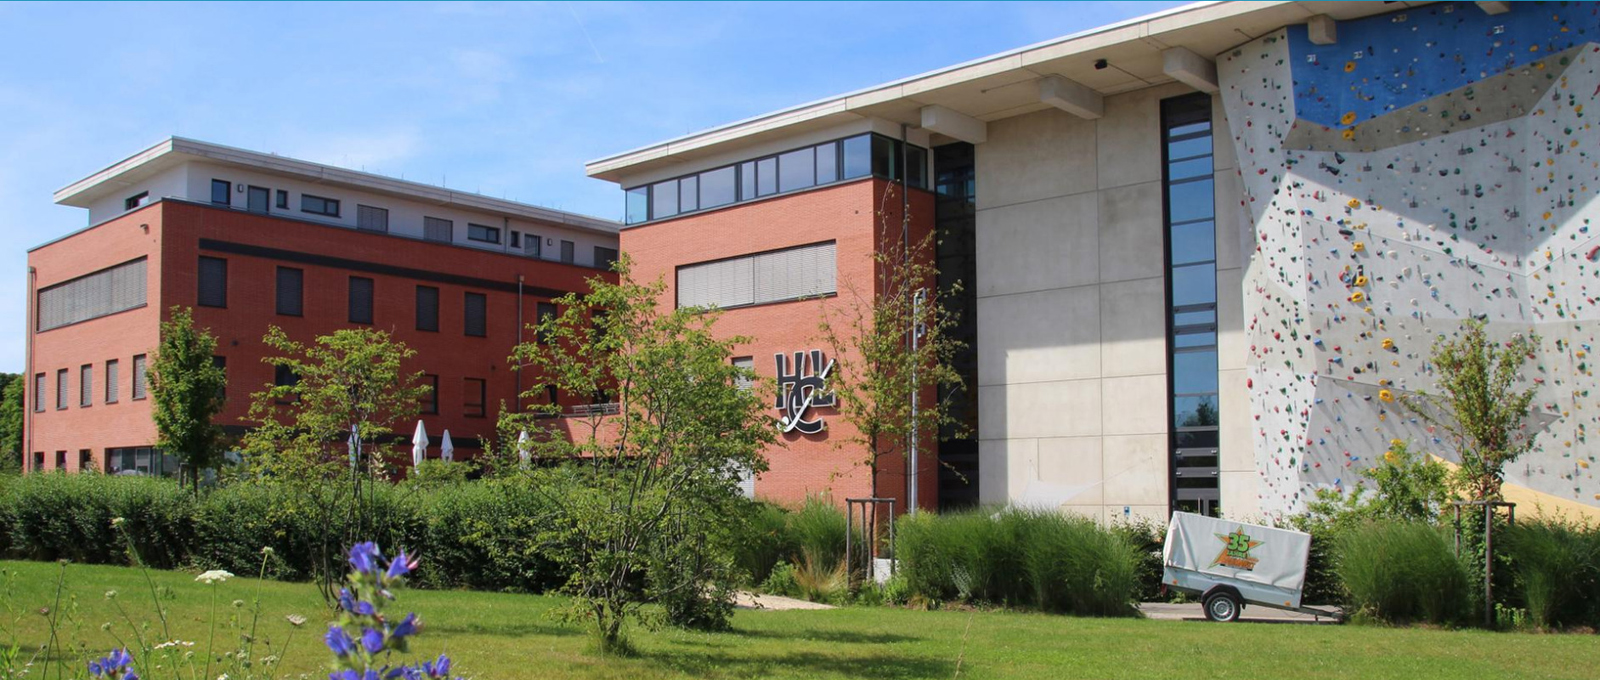 Stiftung zur Unterstützung des Hockeysports in Ludwigsburg, Aussenansicht Sportzentrum Ost